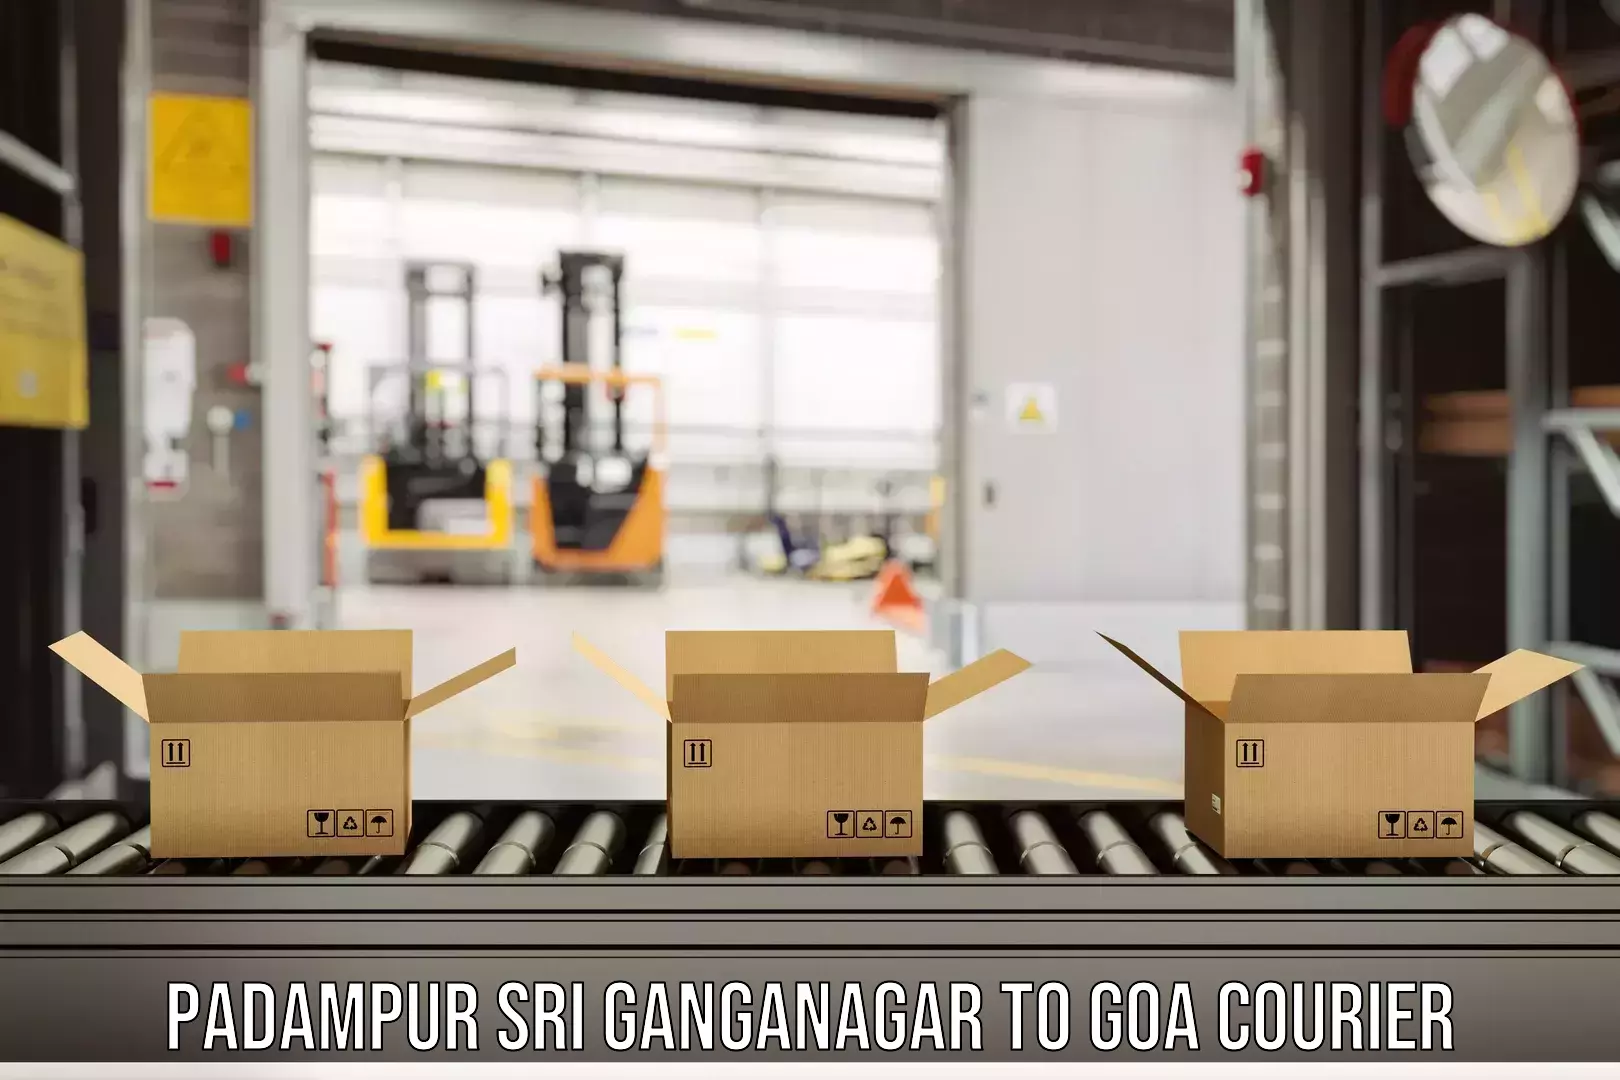 User-friendly courier app Padampur Sri Ganganagar to South Goa